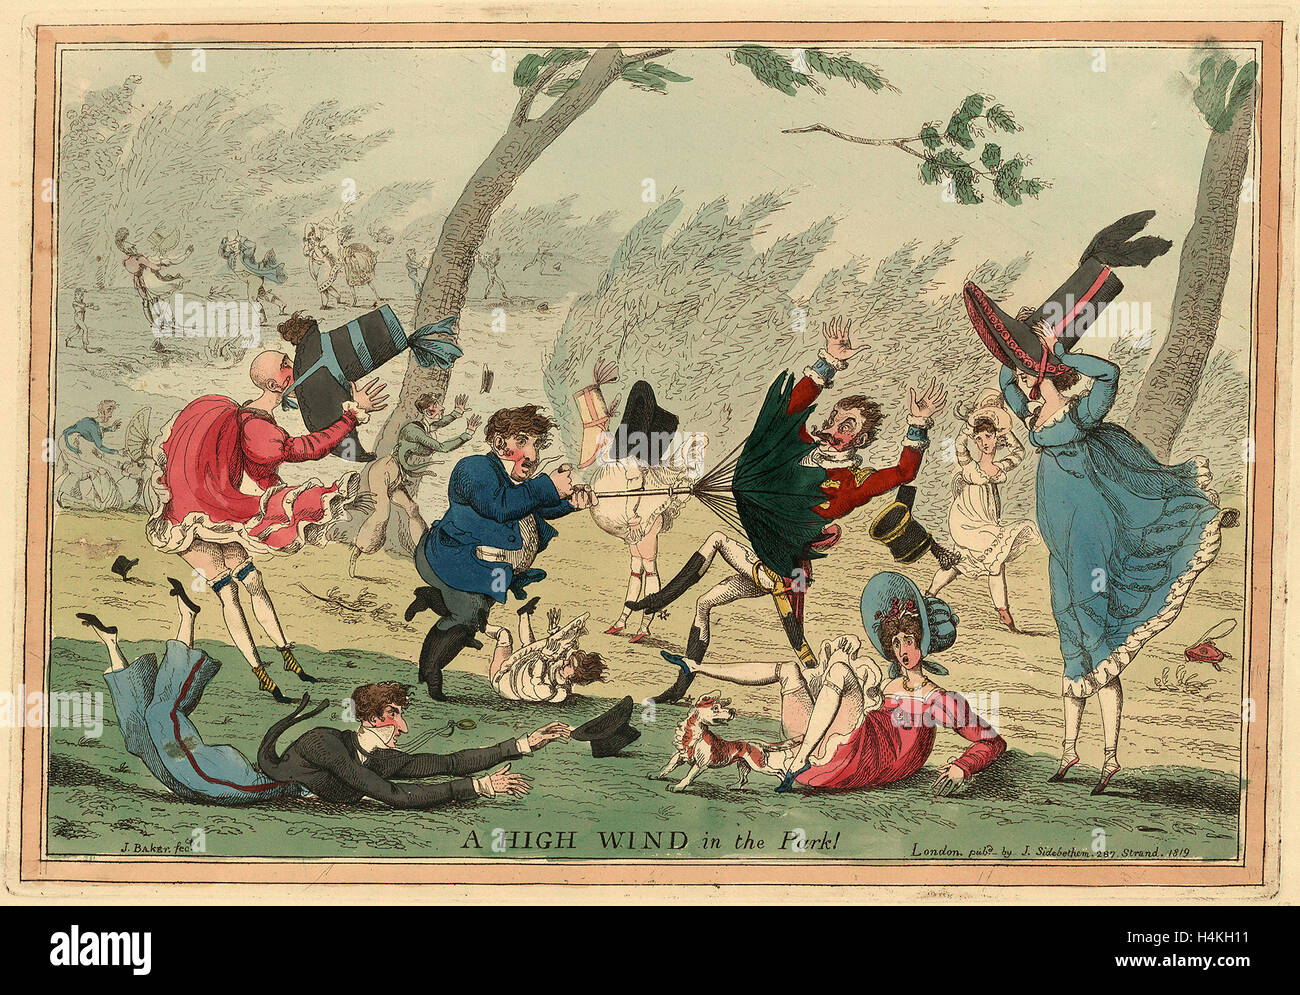 Un fort vent dans le parc ! Gravure 1819, un fort vent qui souffle vers le bas les hommes, femmes et enfants, des robes, des chapeaux Banque D'Images